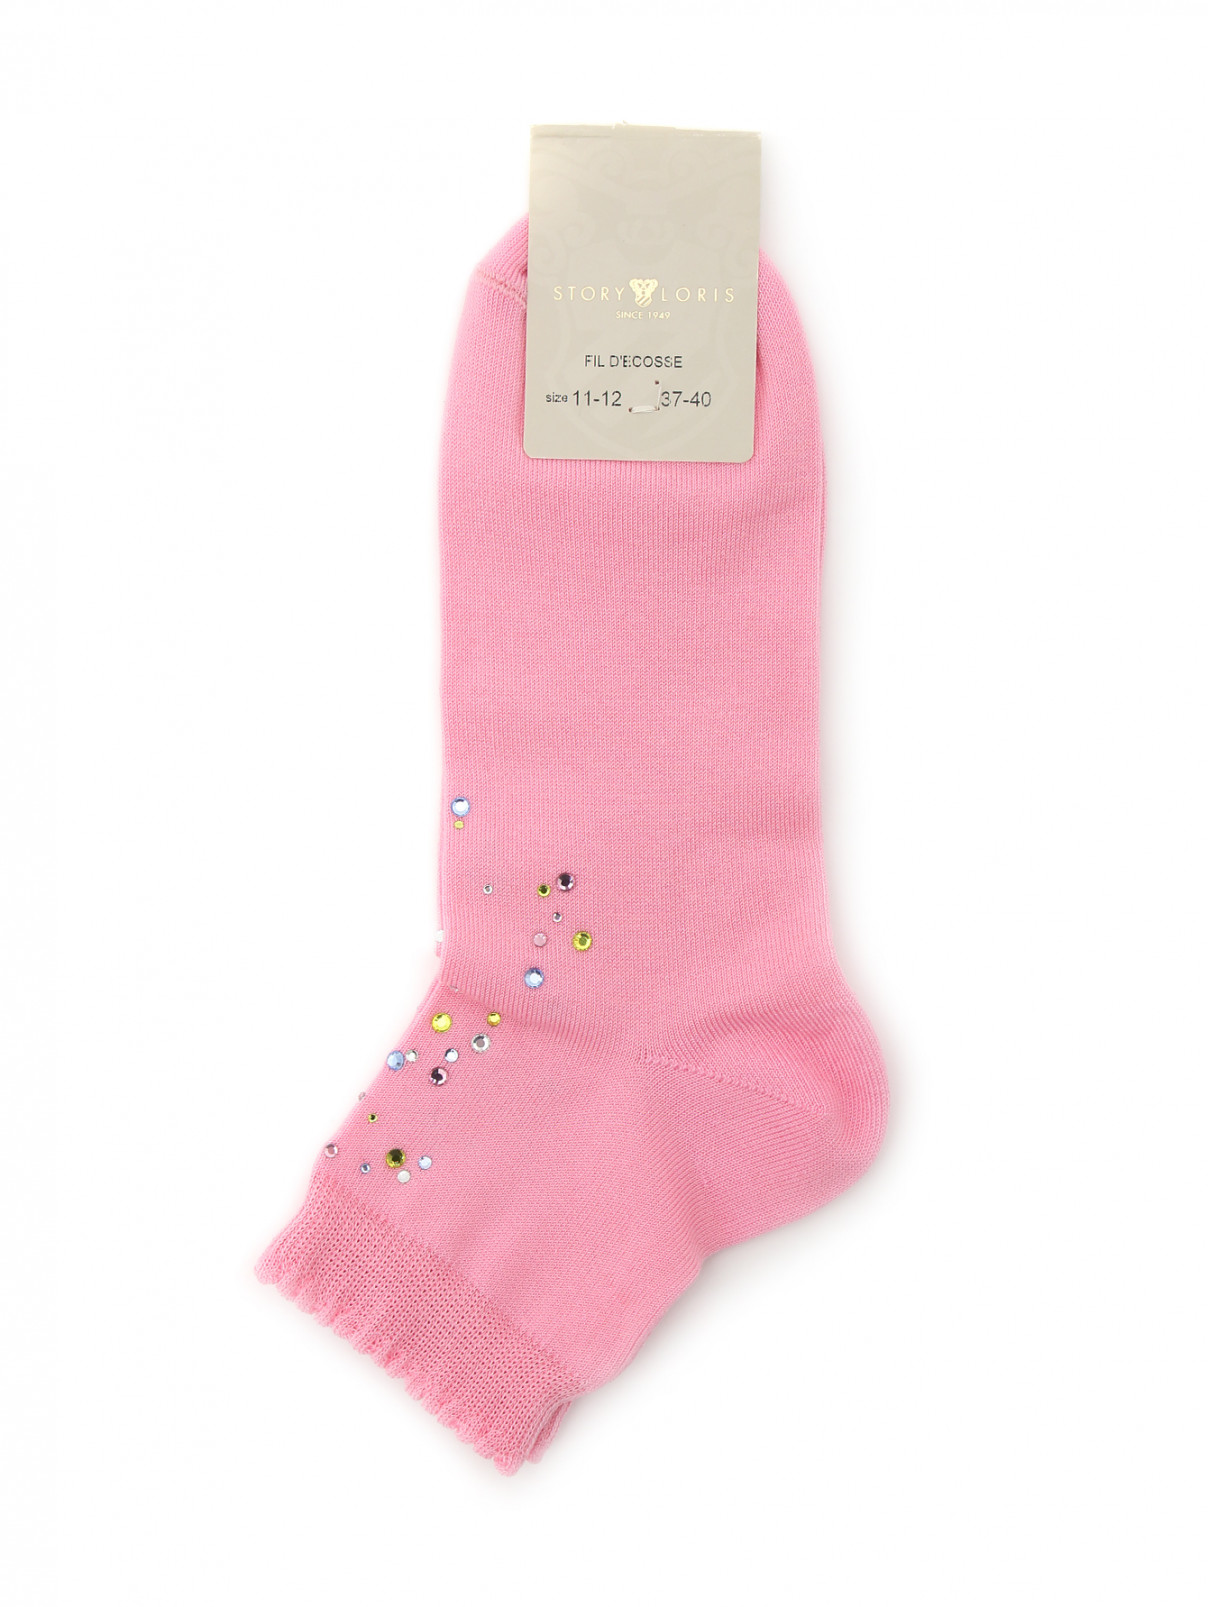 Носки из хлопка декорированные стразами Story Loris  –  Общий вид  – Цвет:  Розовый